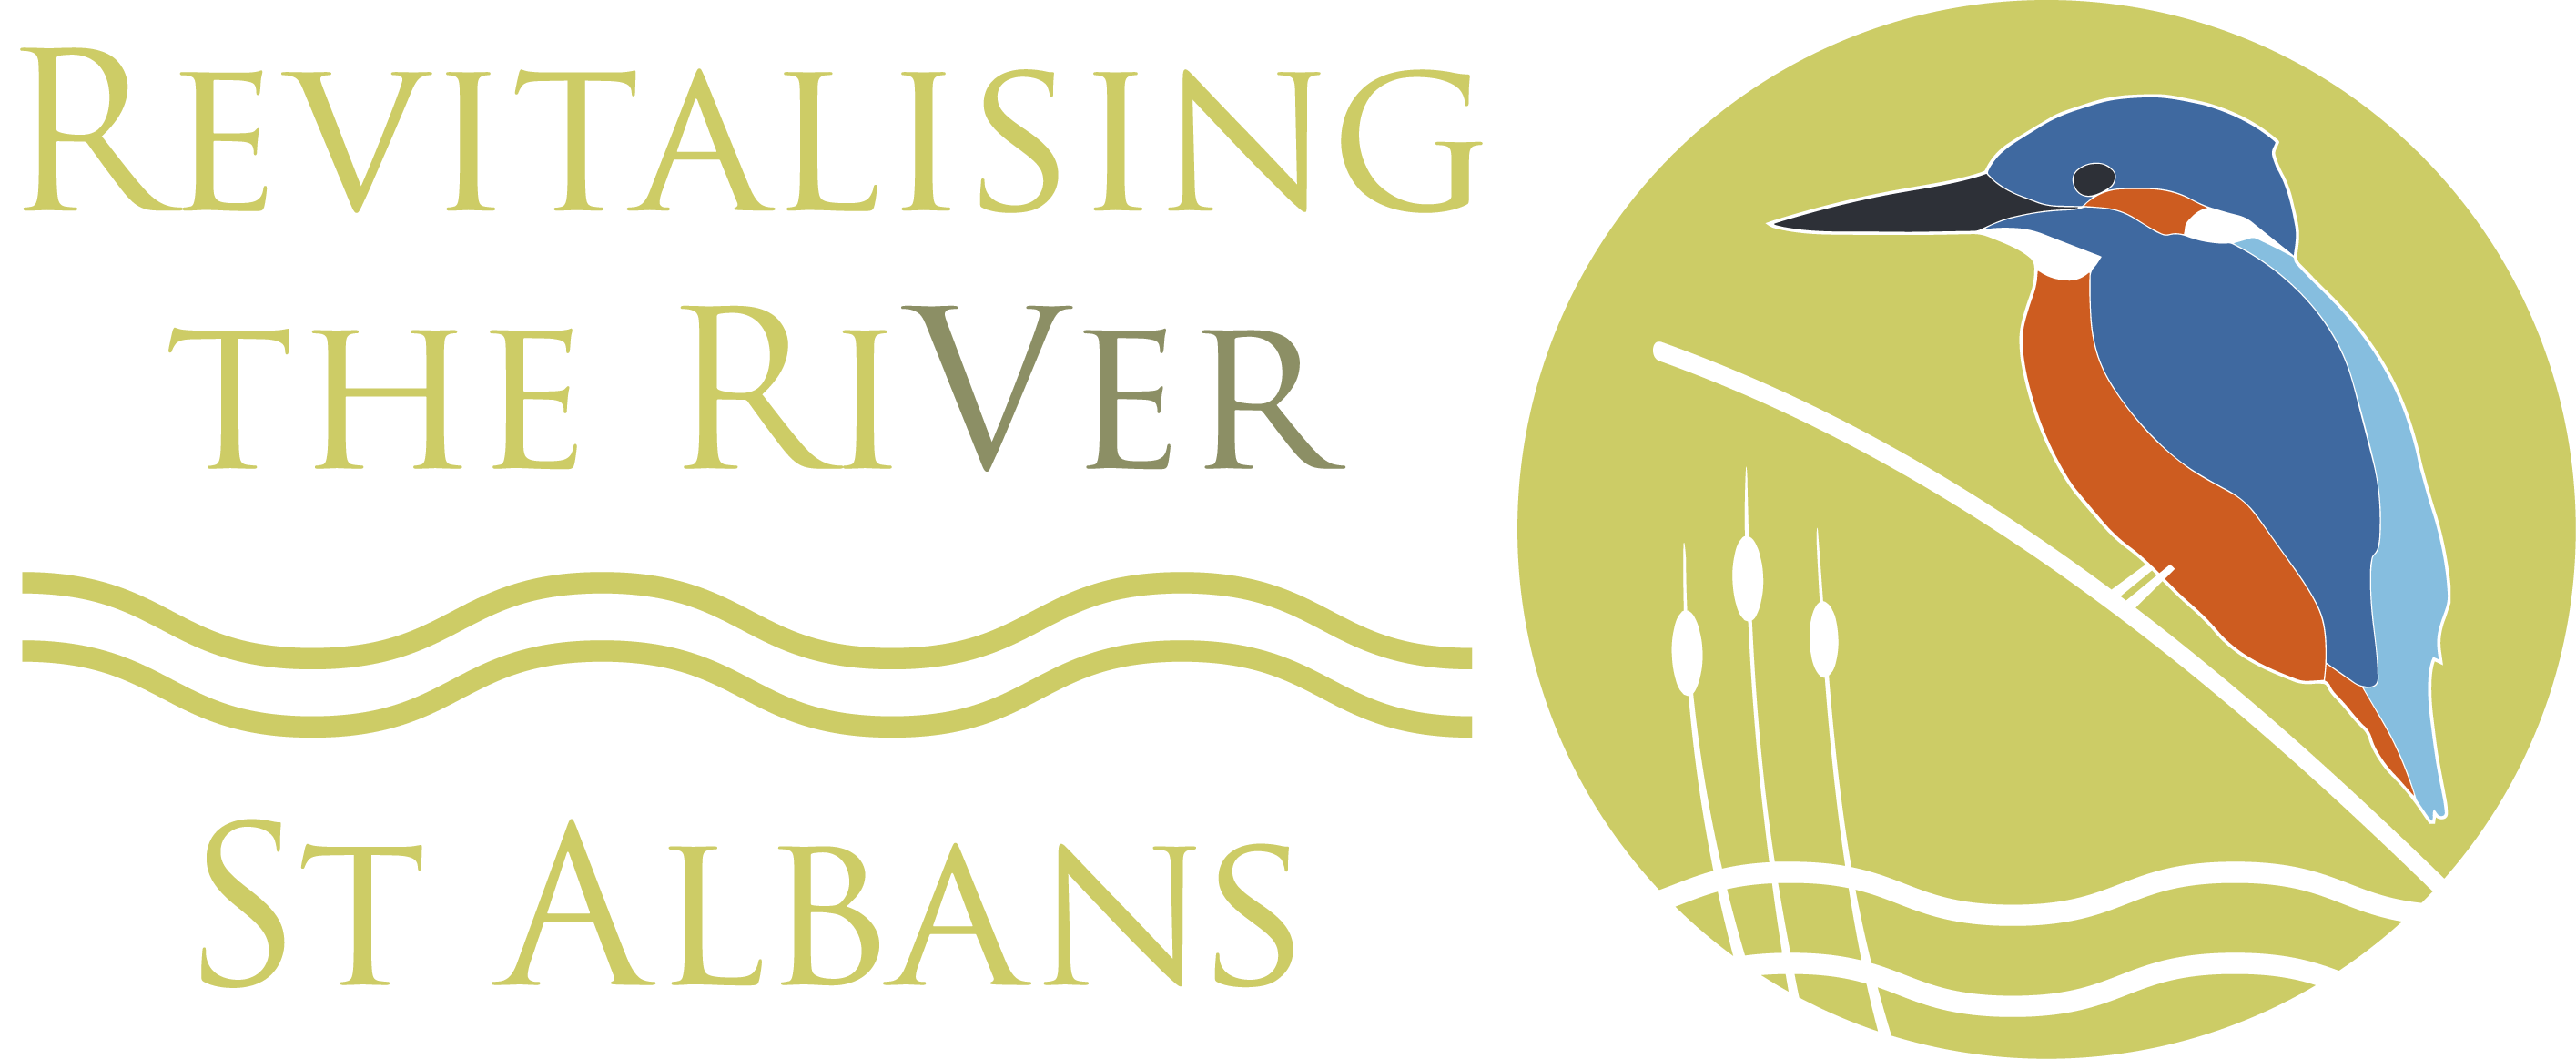 River Bird Logo - St Albans City & District Council - River Ver and Verulamium Park ...